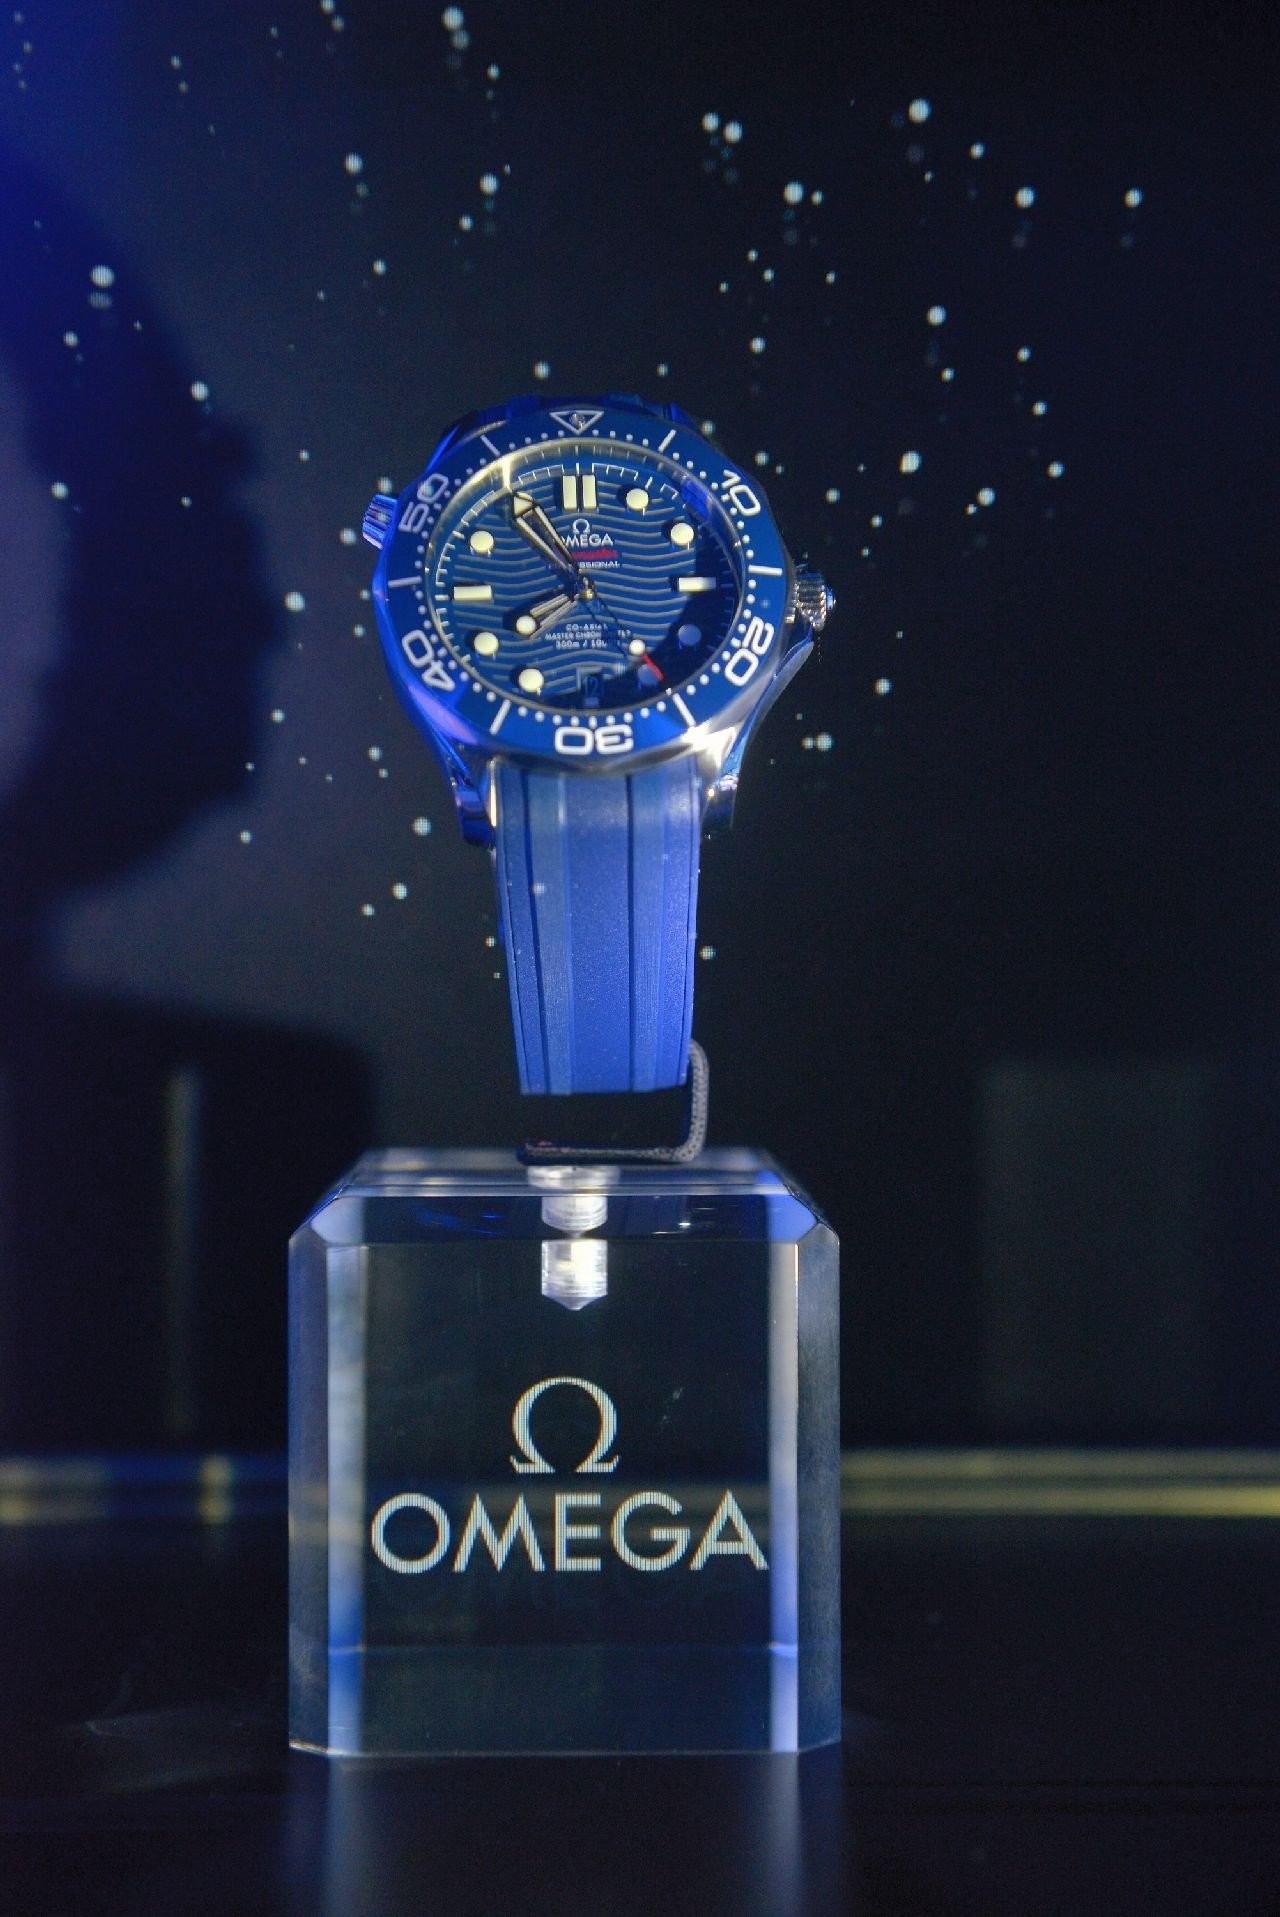 omega-seamaster-diver-300m-event-121118-9.JPG